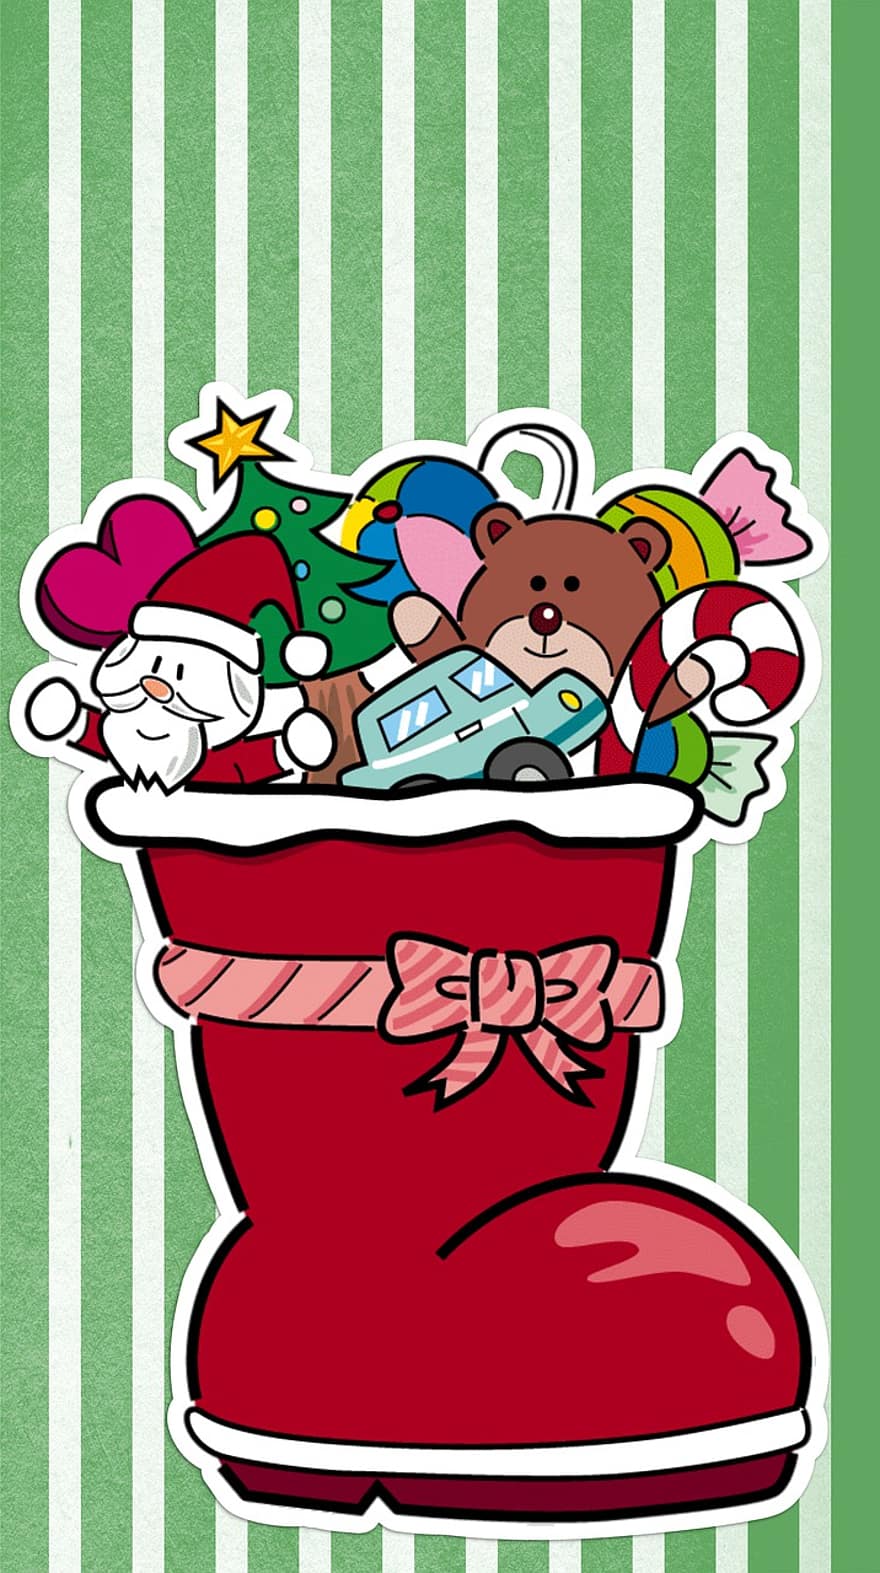 クリスマス、カード、装飾、おもちゃ、サンタ、靴下、プレゼント